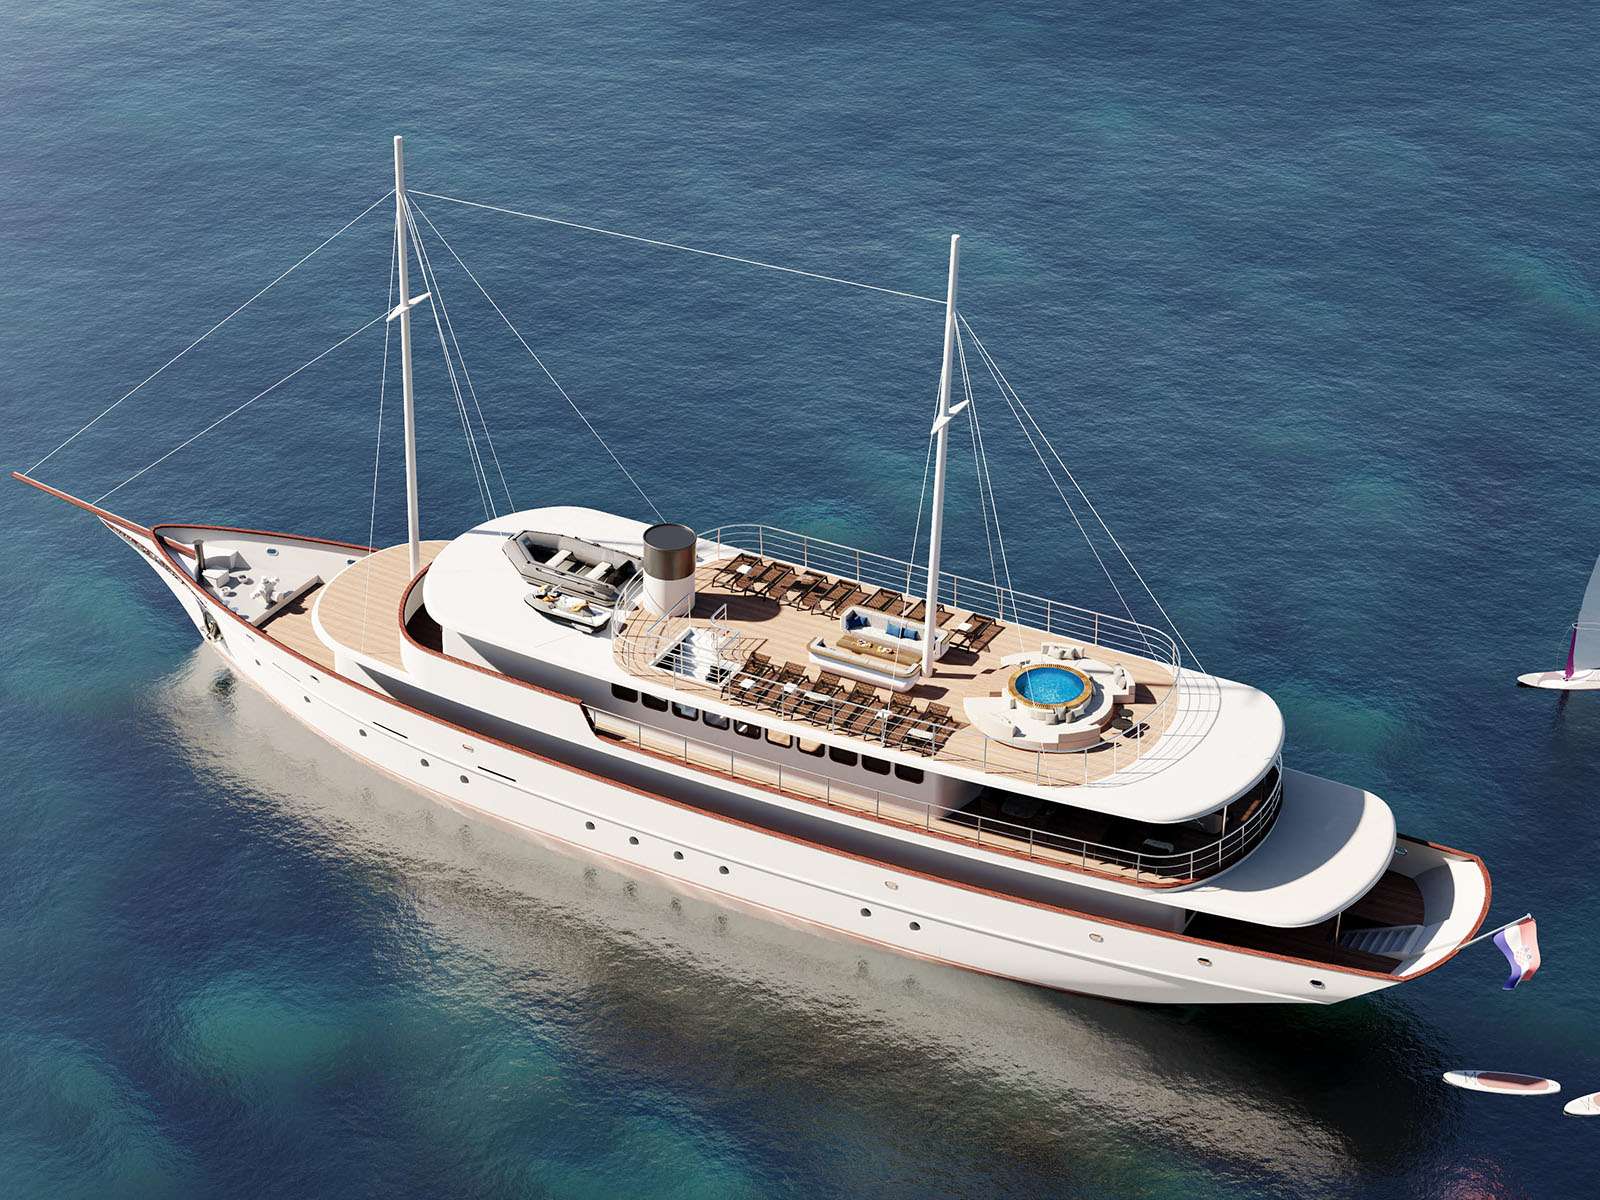 Bellezza - Yacht Charter Novalja & Boat hire in Croatia 2